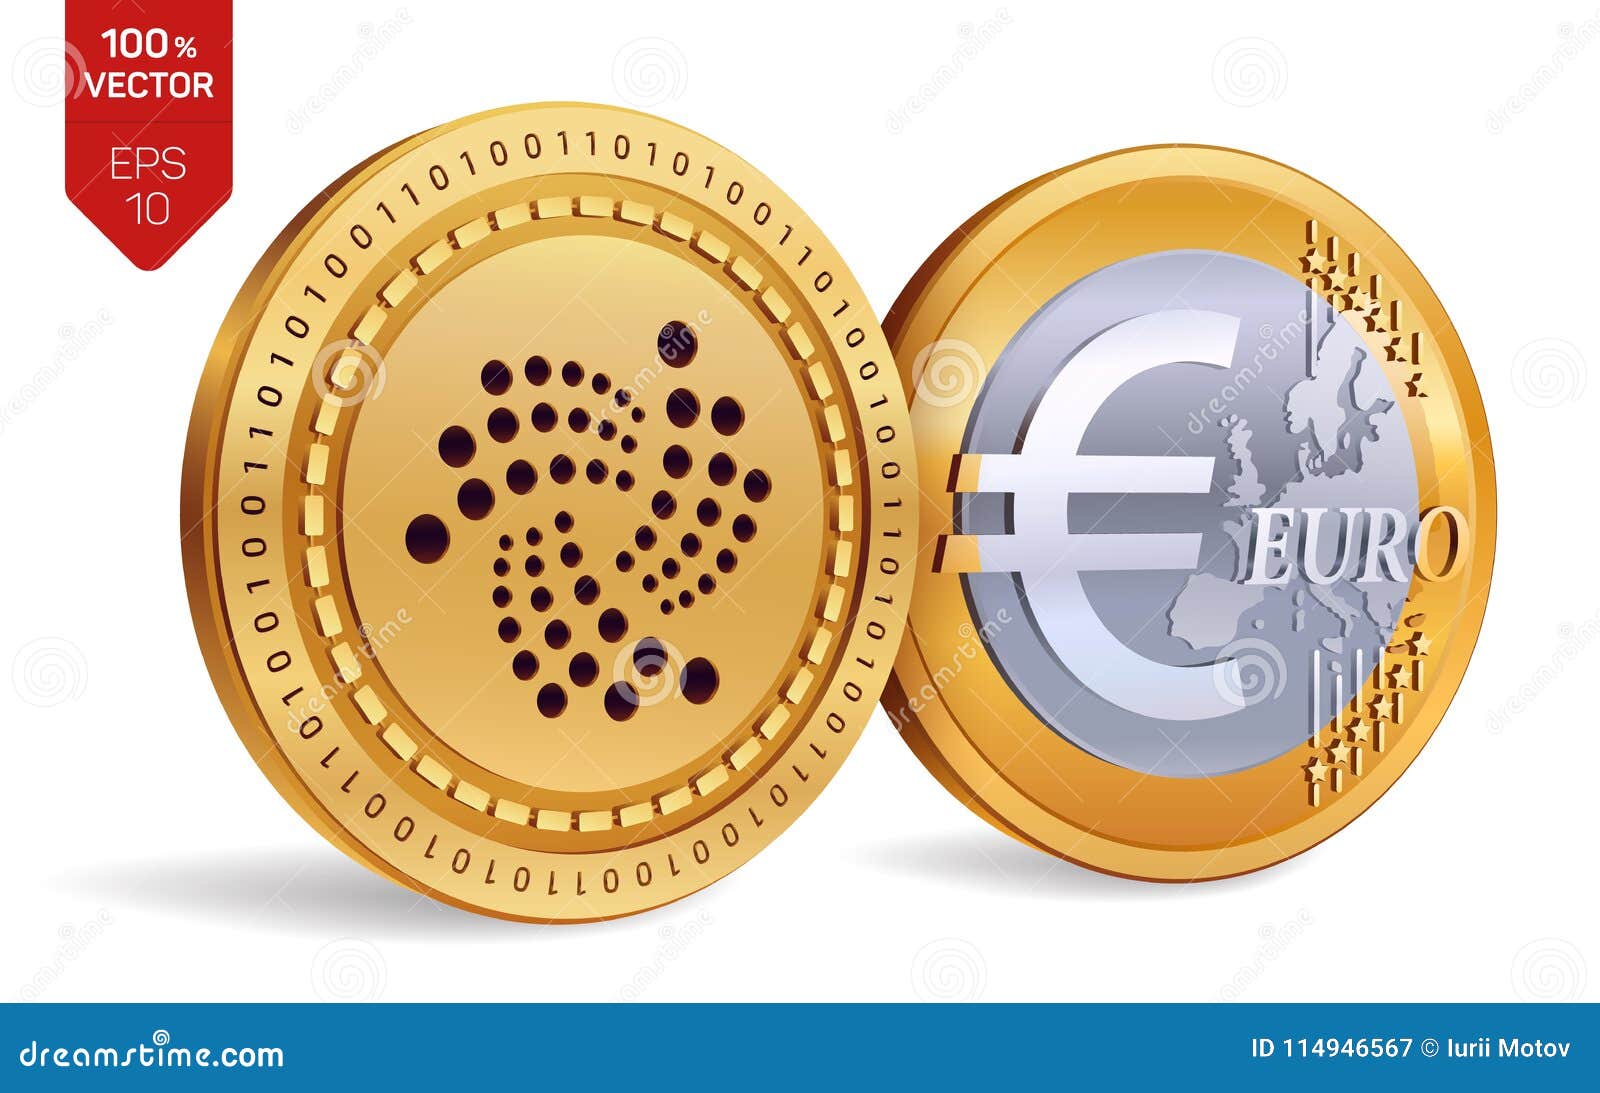 ada coin euro)